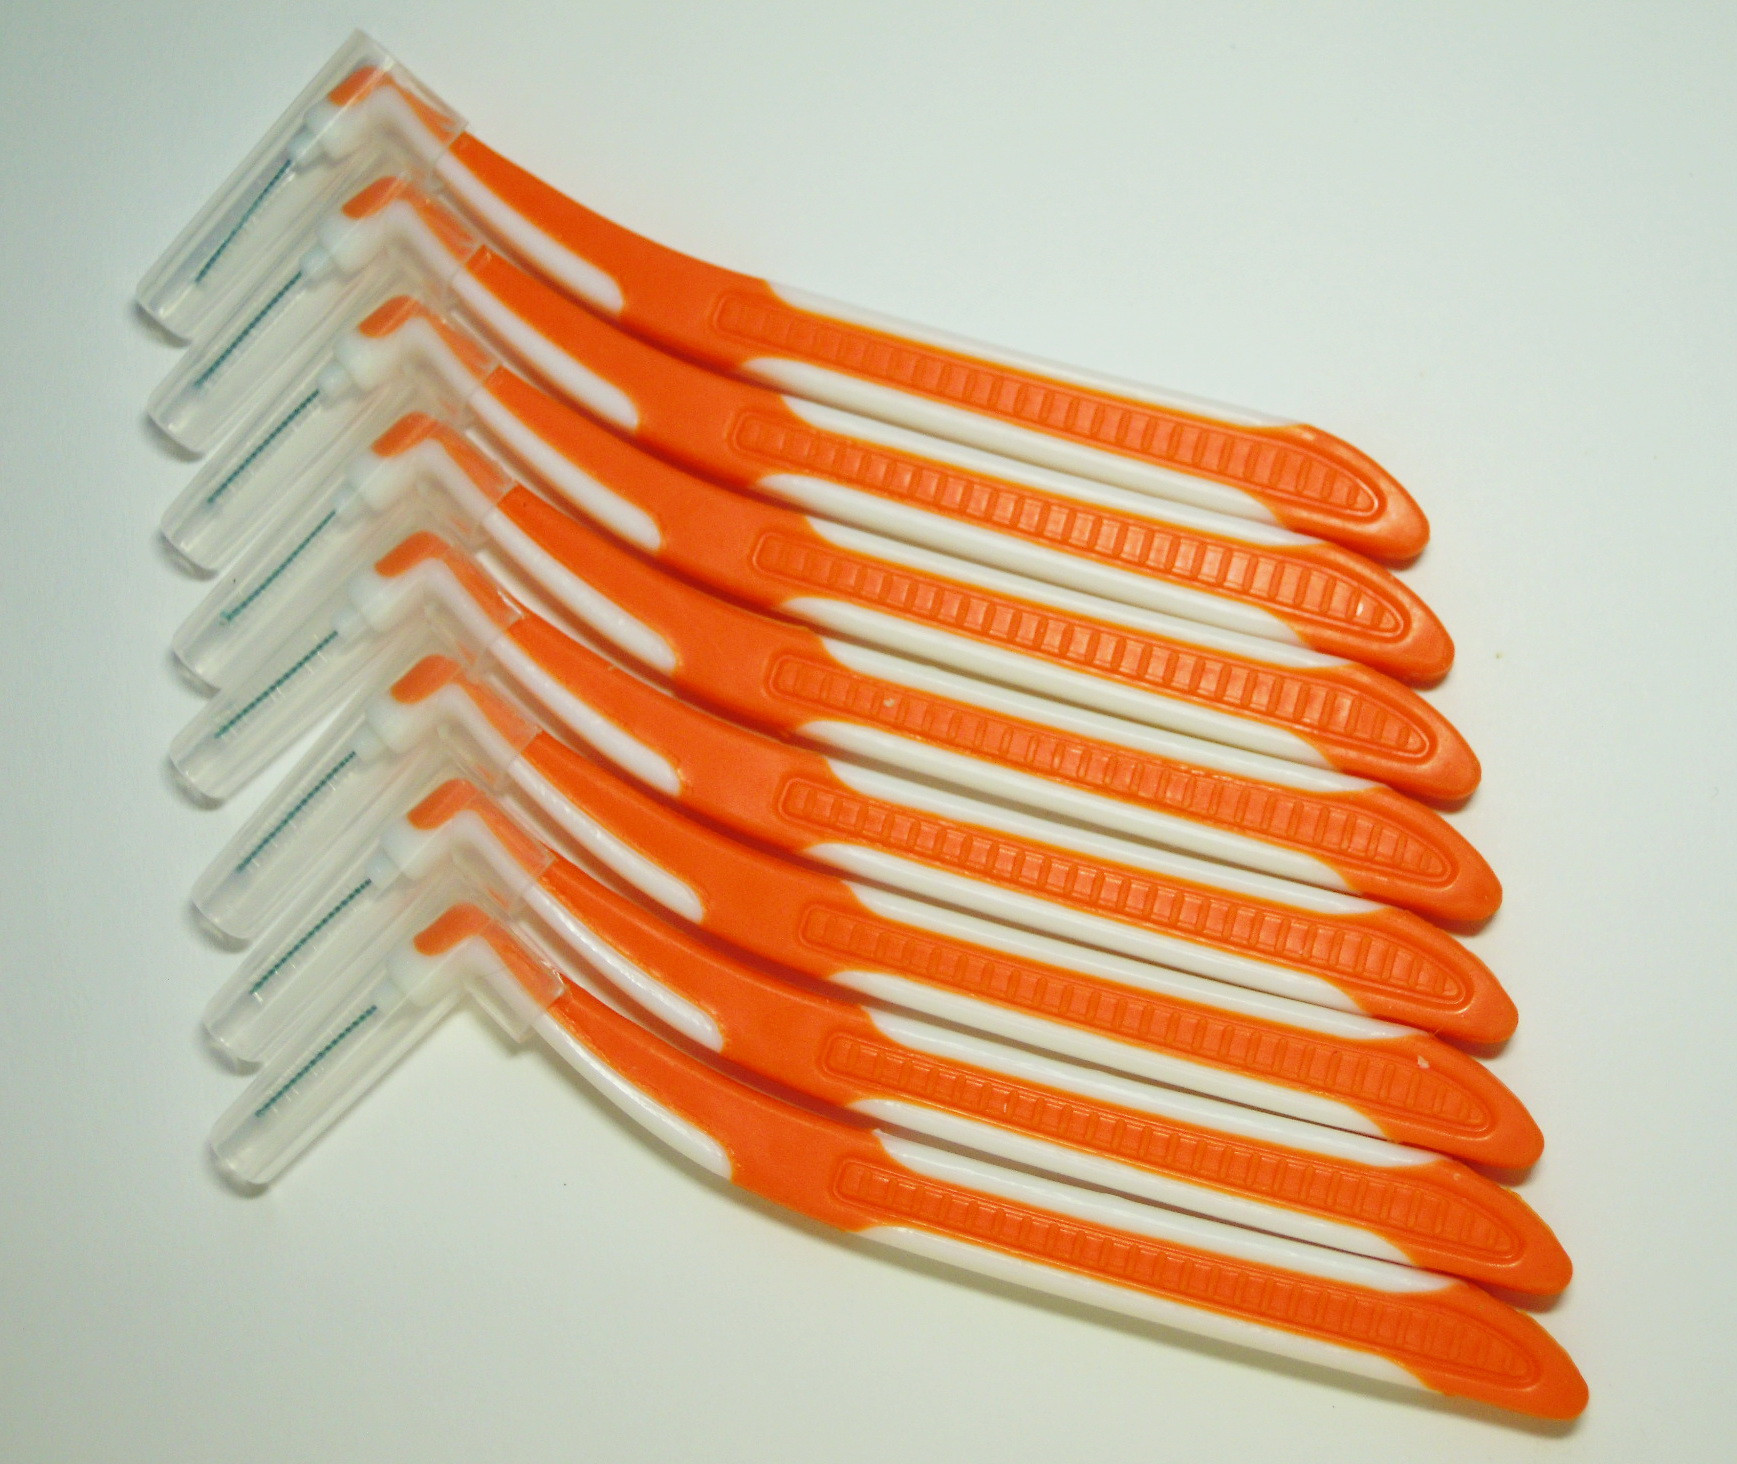 Mezizubní lomené kartáčky ML 0,4 mm zahnuté 8 ks šikmé L Ultra oranžové Kartáček zahnutý mezi zubní šikmý lomený tvar Spokar